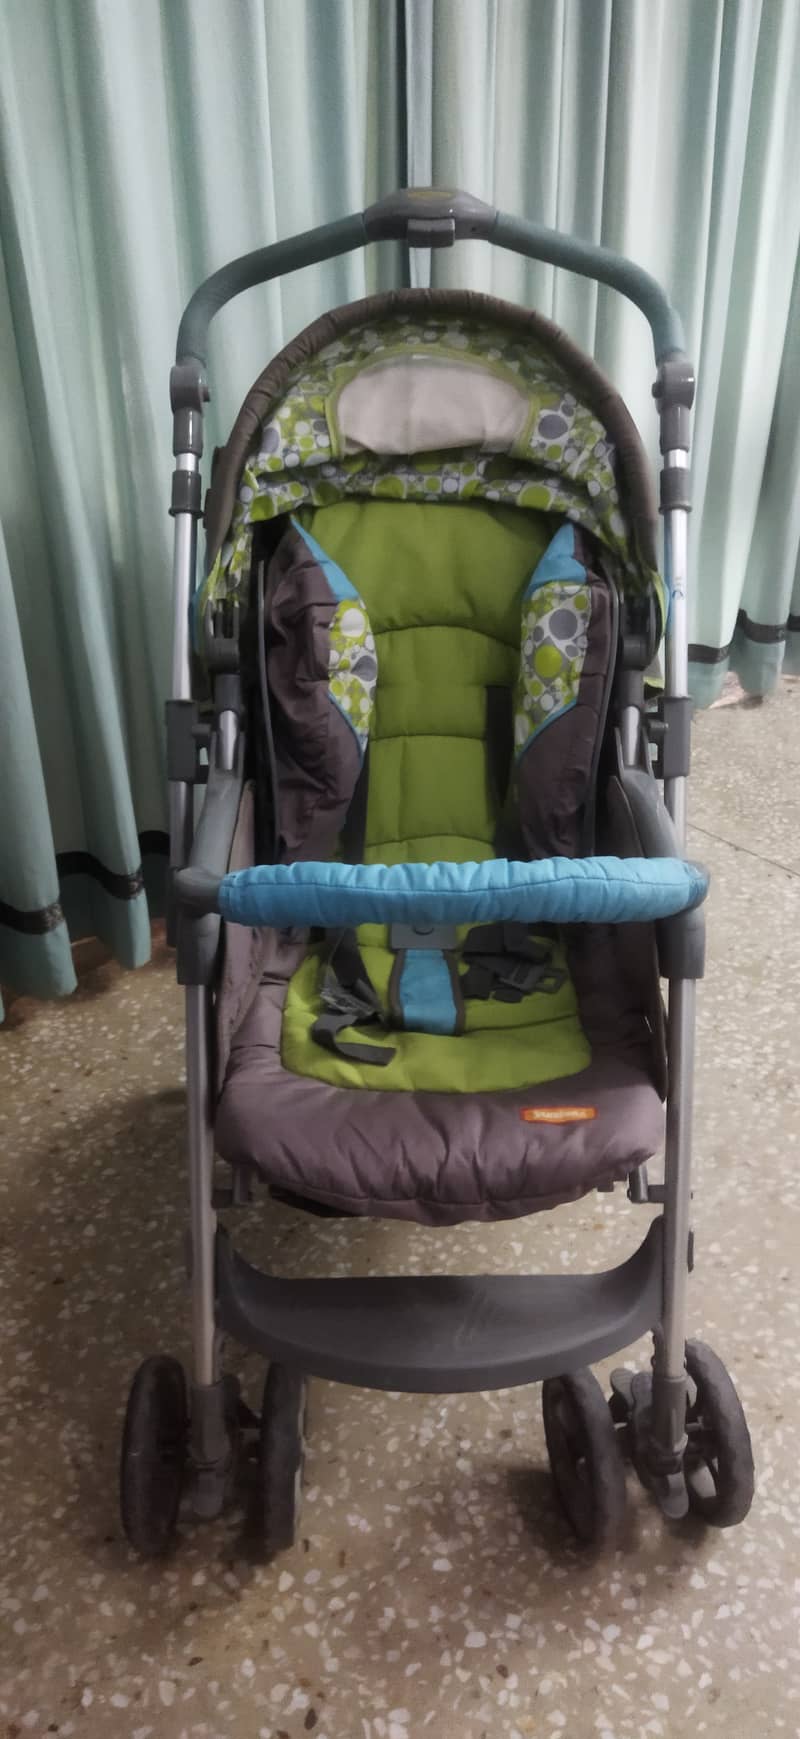 Junior's Brand imported baby stroller / pram 5